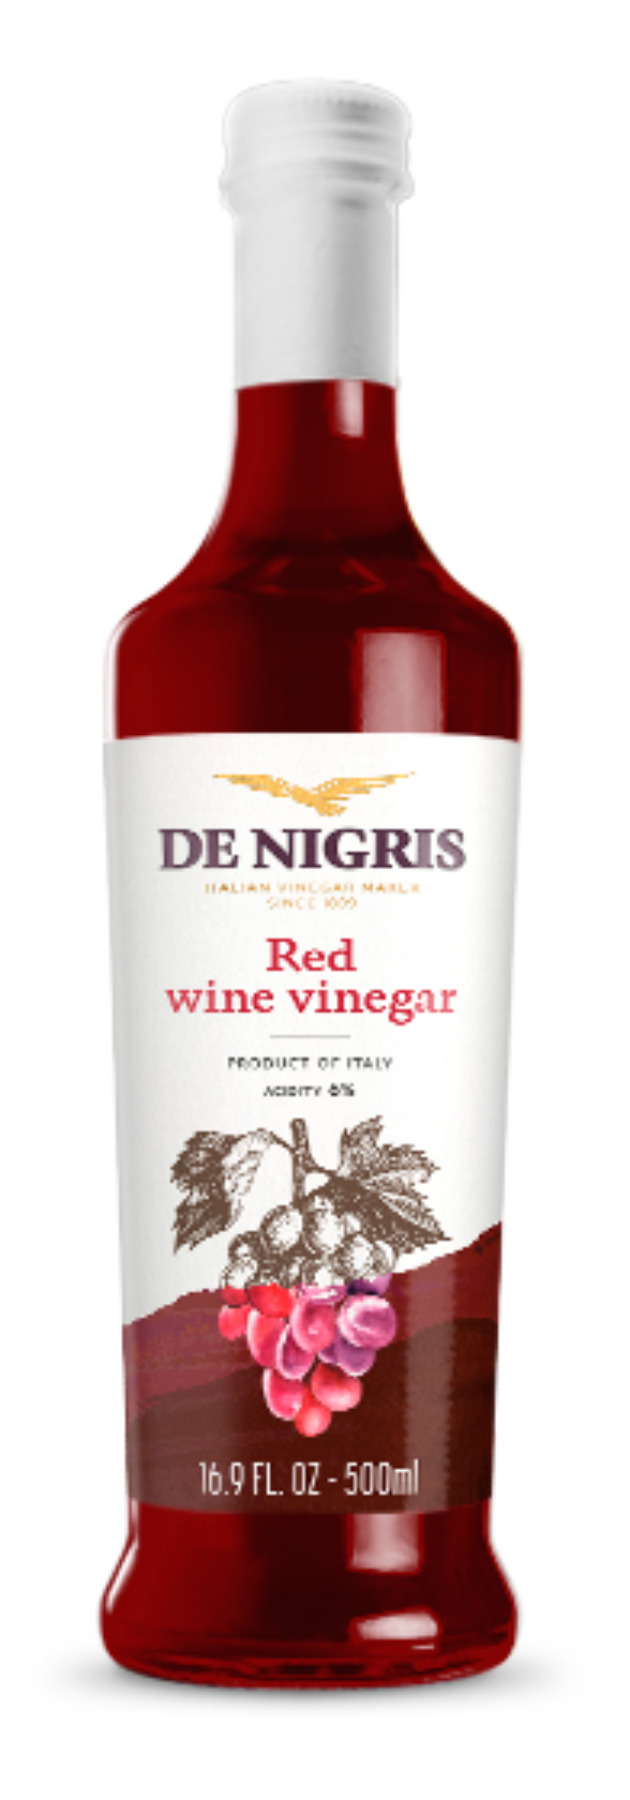 Vinaigre balsamique de vin rouge De Nigris